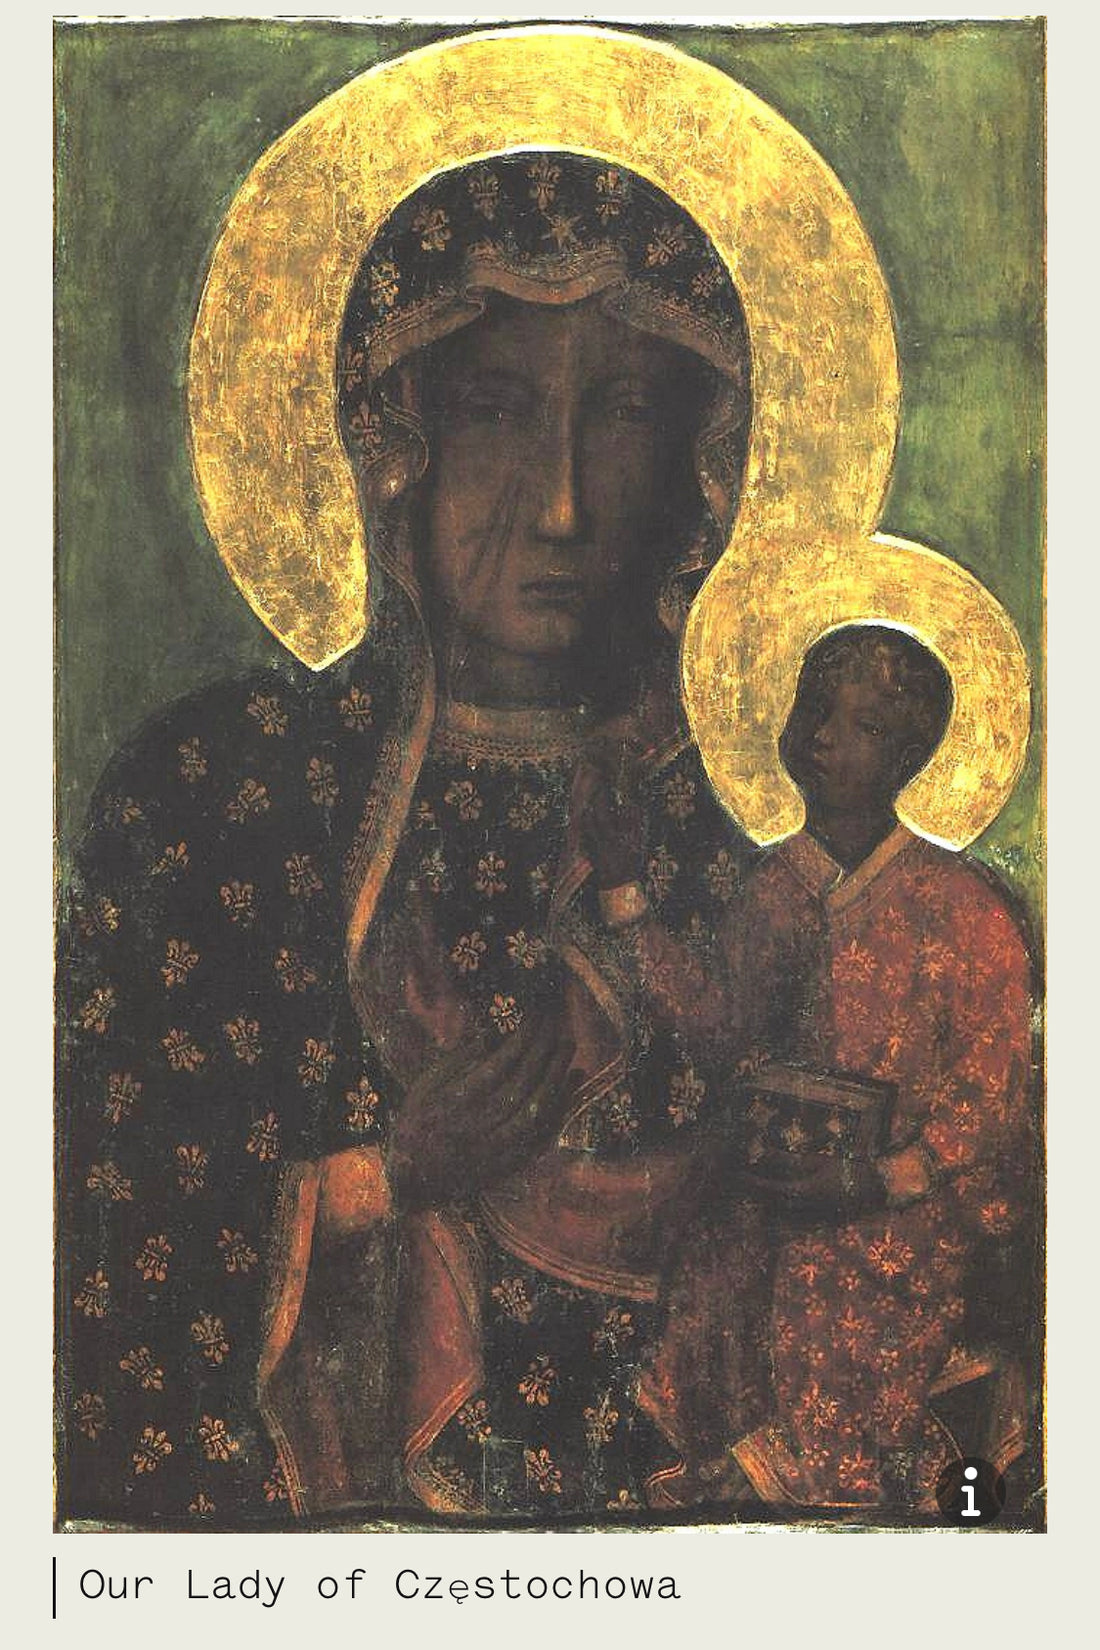 Our Lady of Częstochowa